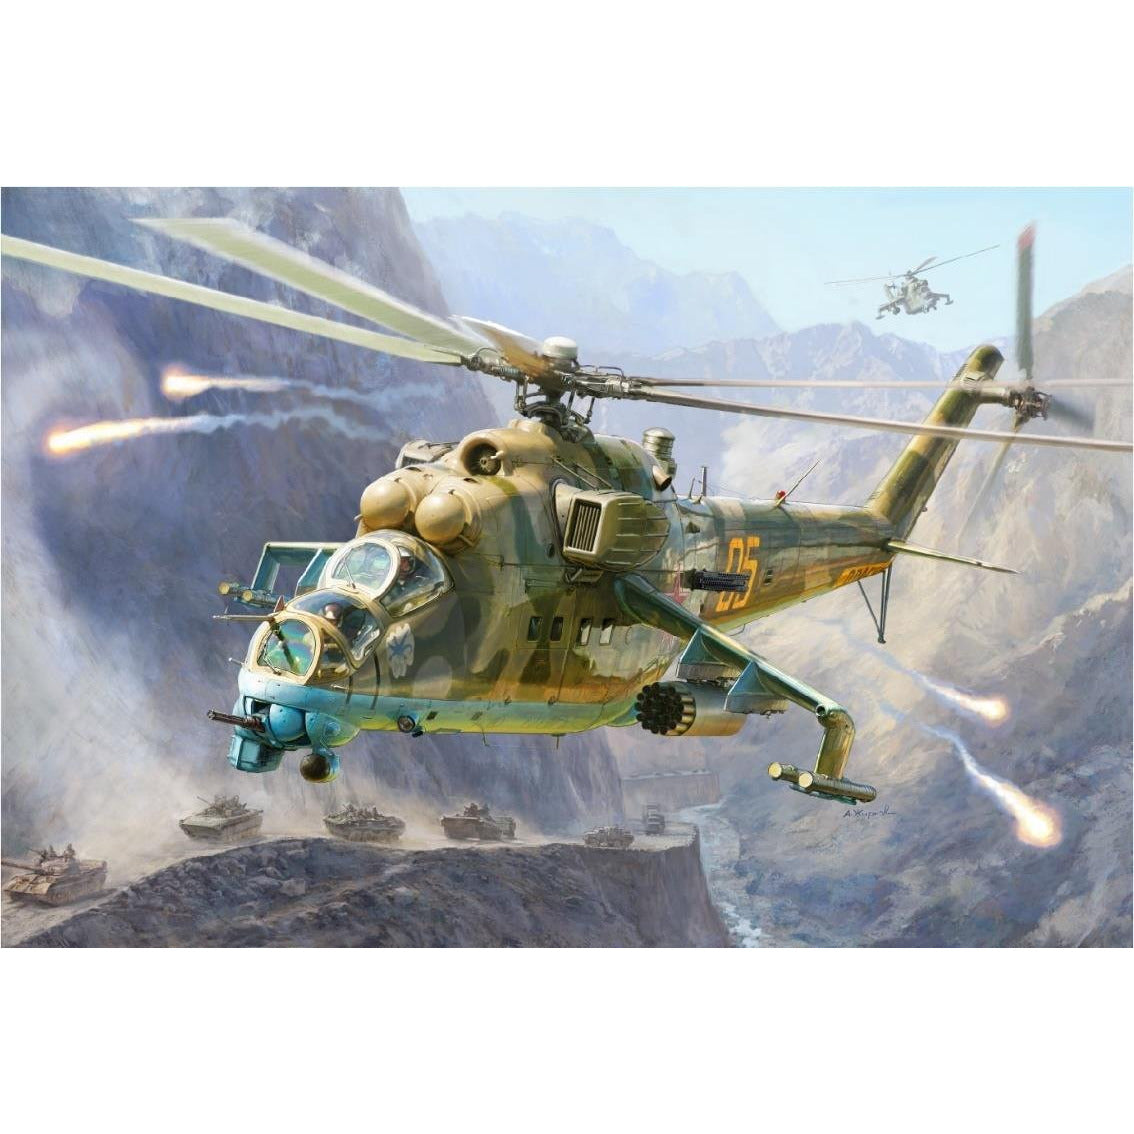 MIL Mi-24V/VP "Hind" Soviet Attack Helicopter 1/48 by Zvezda